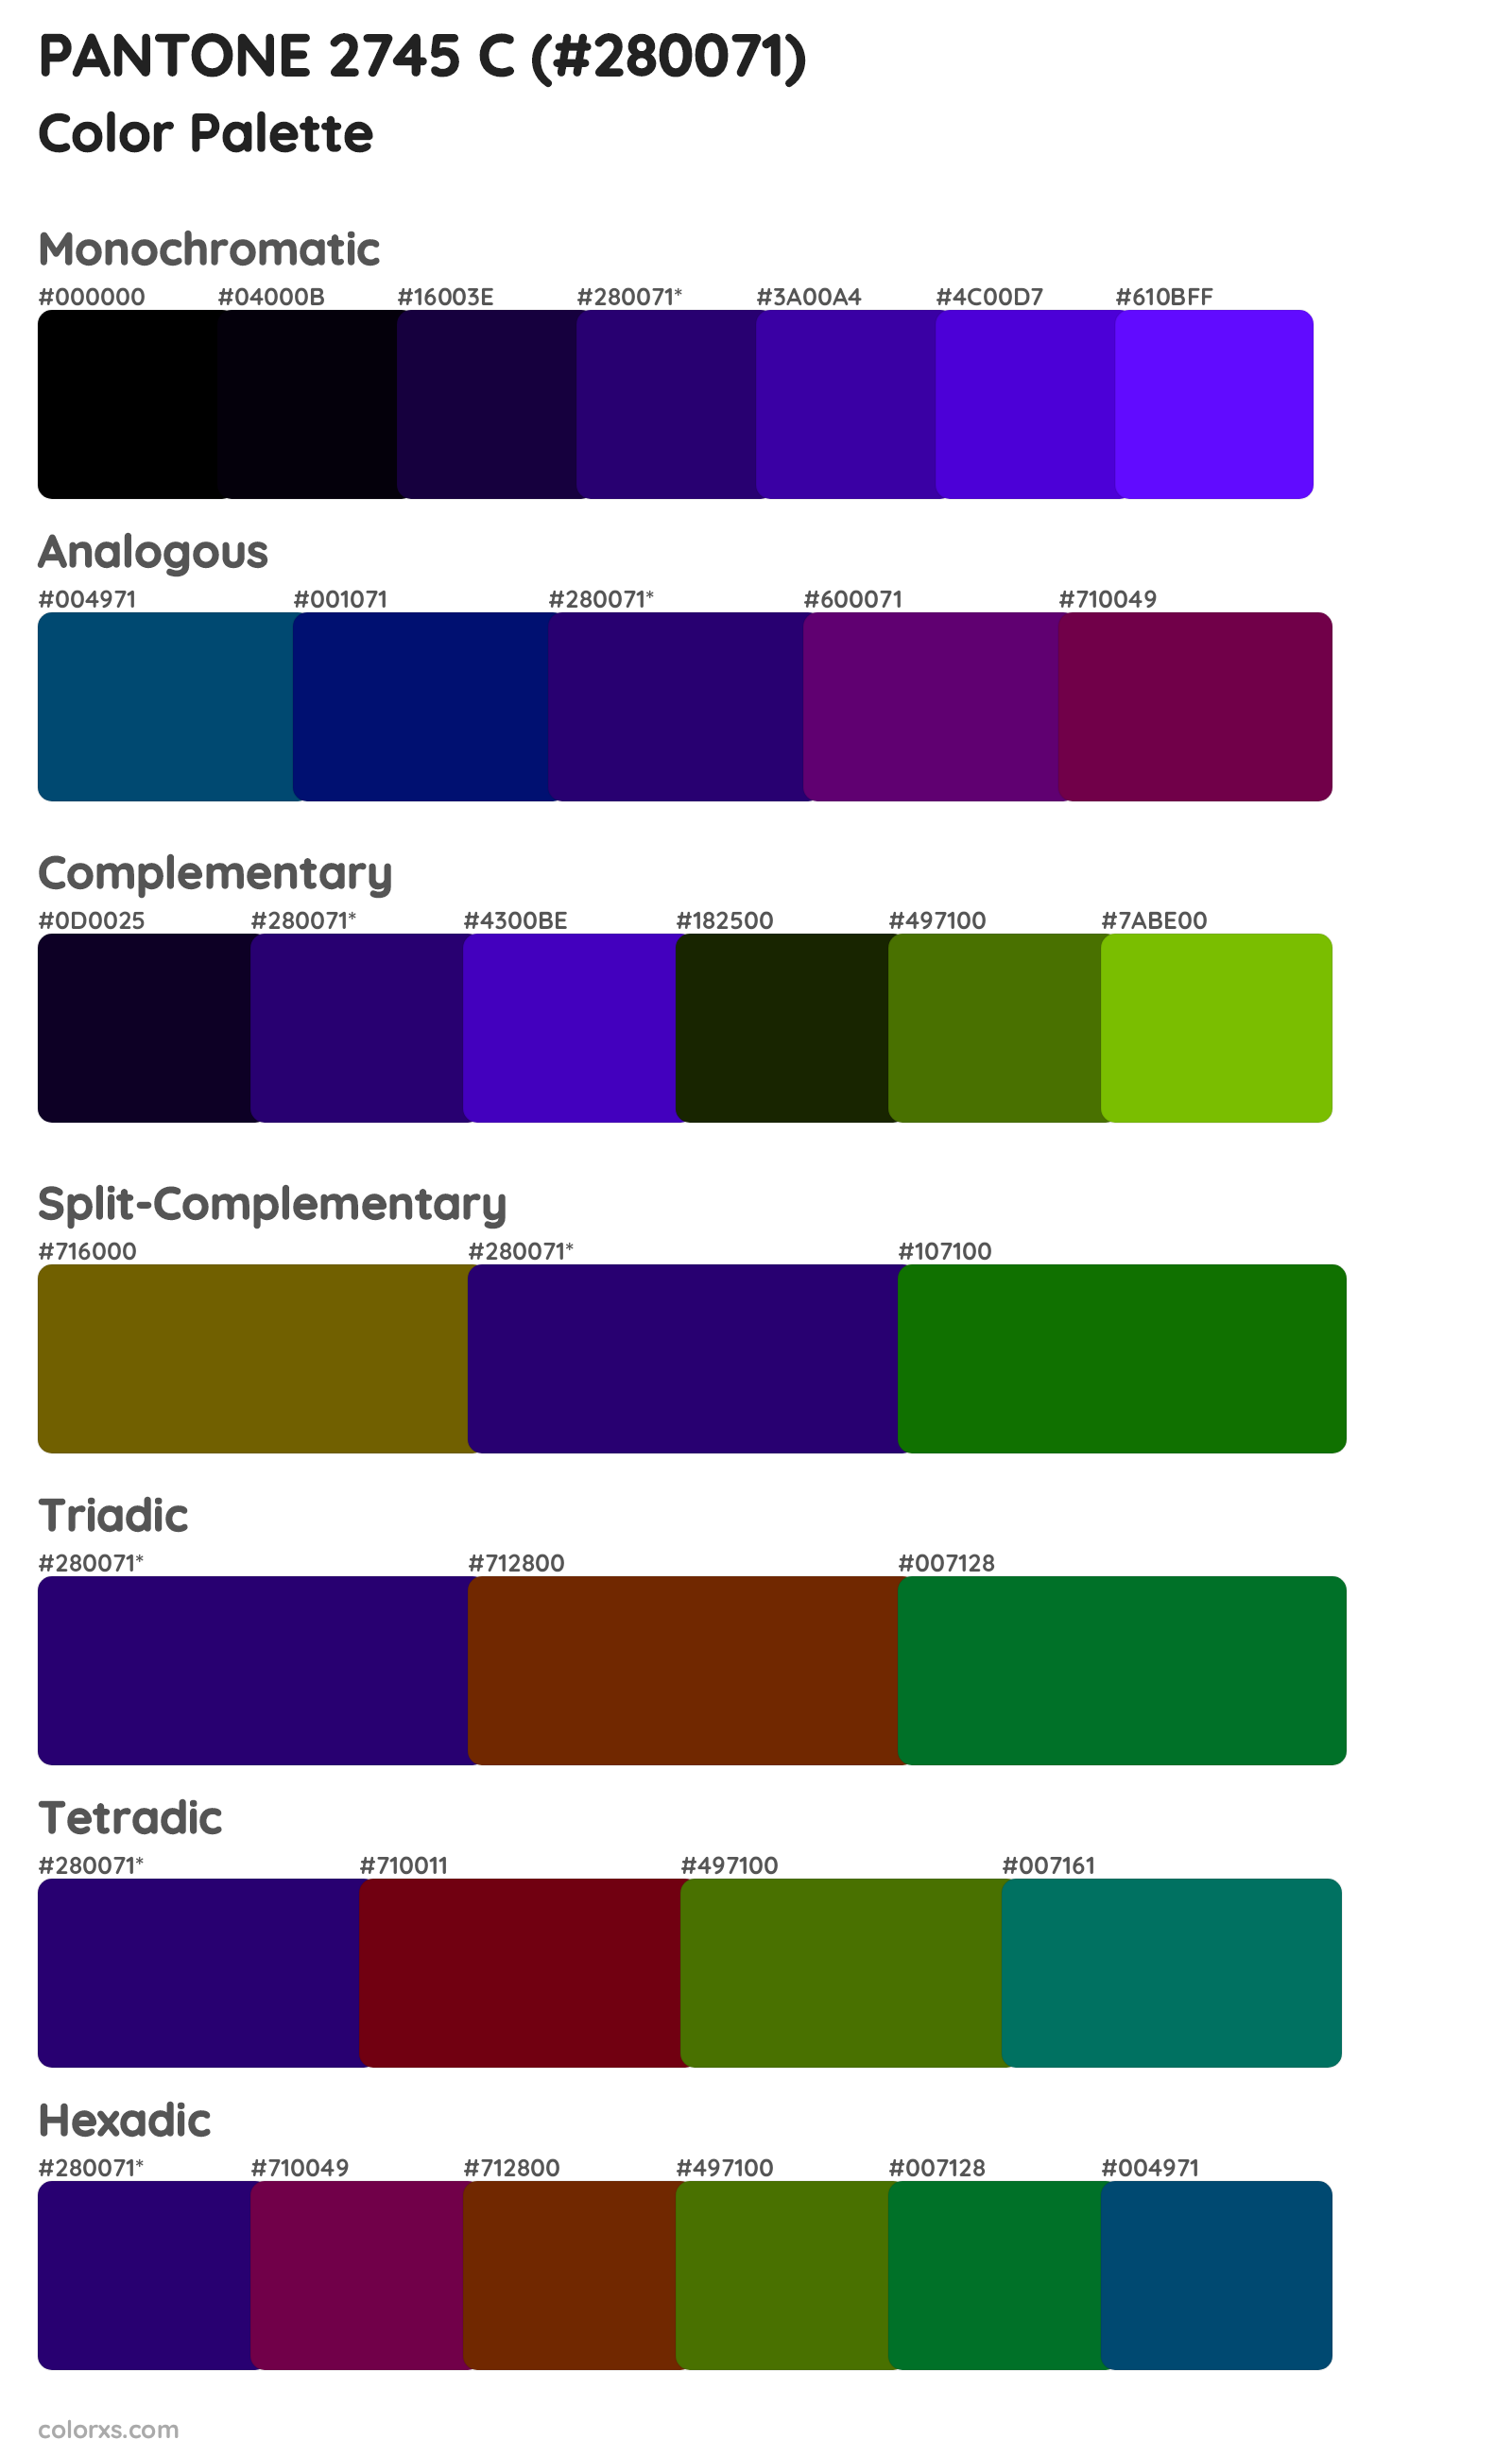 PANTONE 2745 C Color Scheme Palettes